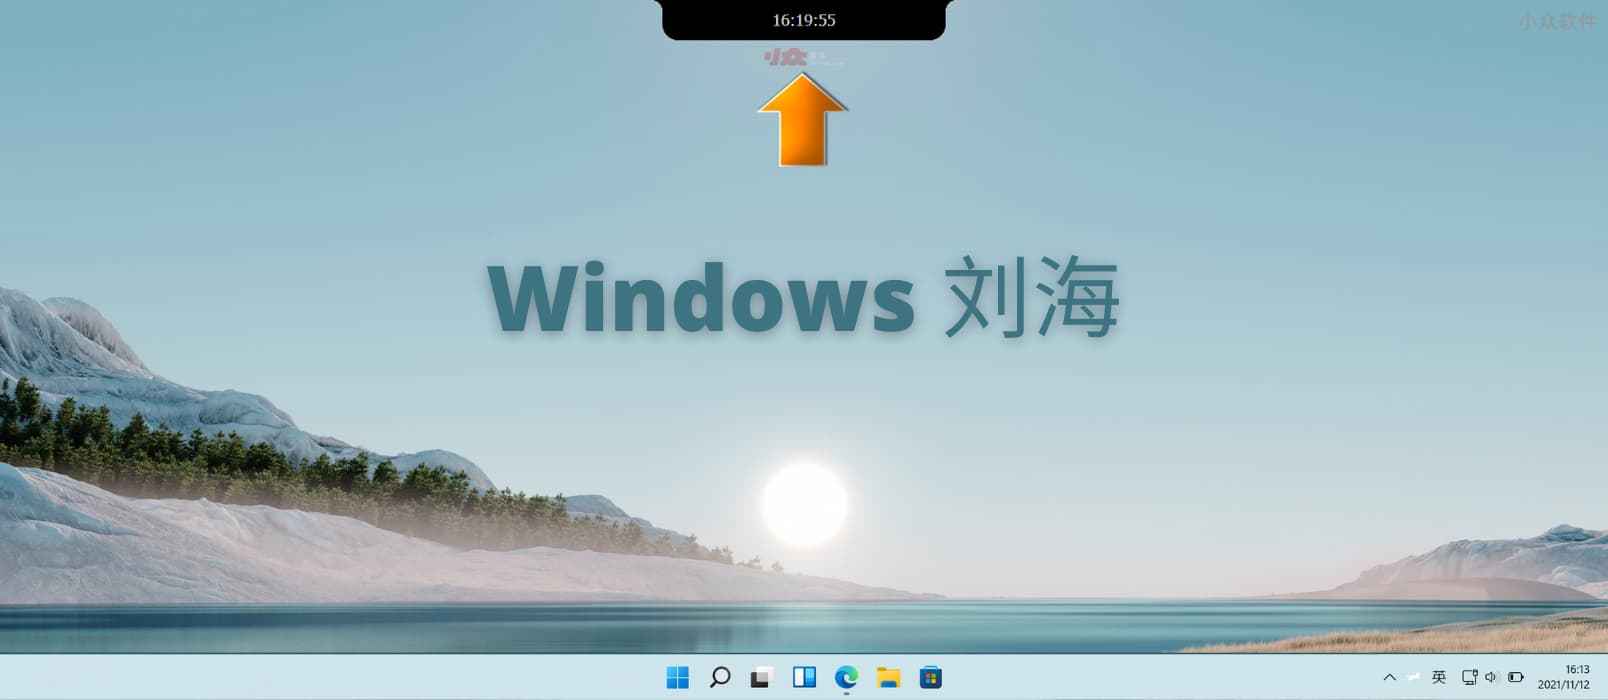 Windows 的刘海 – 为 Windows  屏幕顶部添加刘海，3 种尺寸[真没什么用]